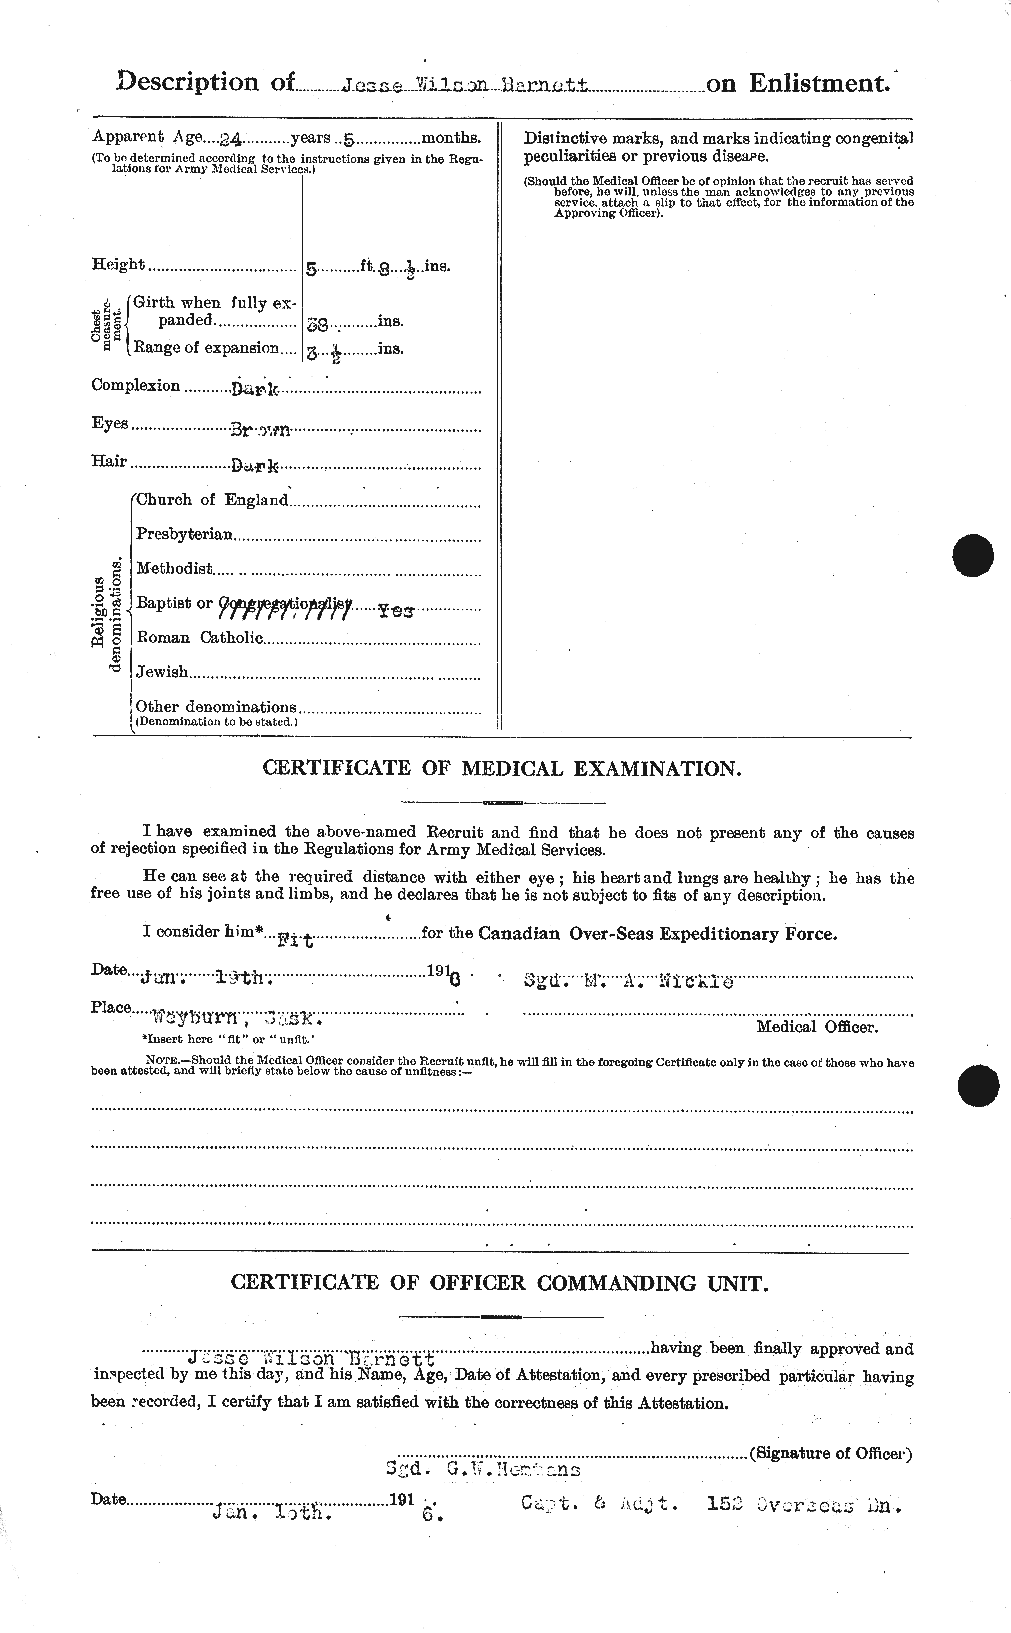 Dossiers du Personnel de la Première Guerre mondiale - CEC 222939b